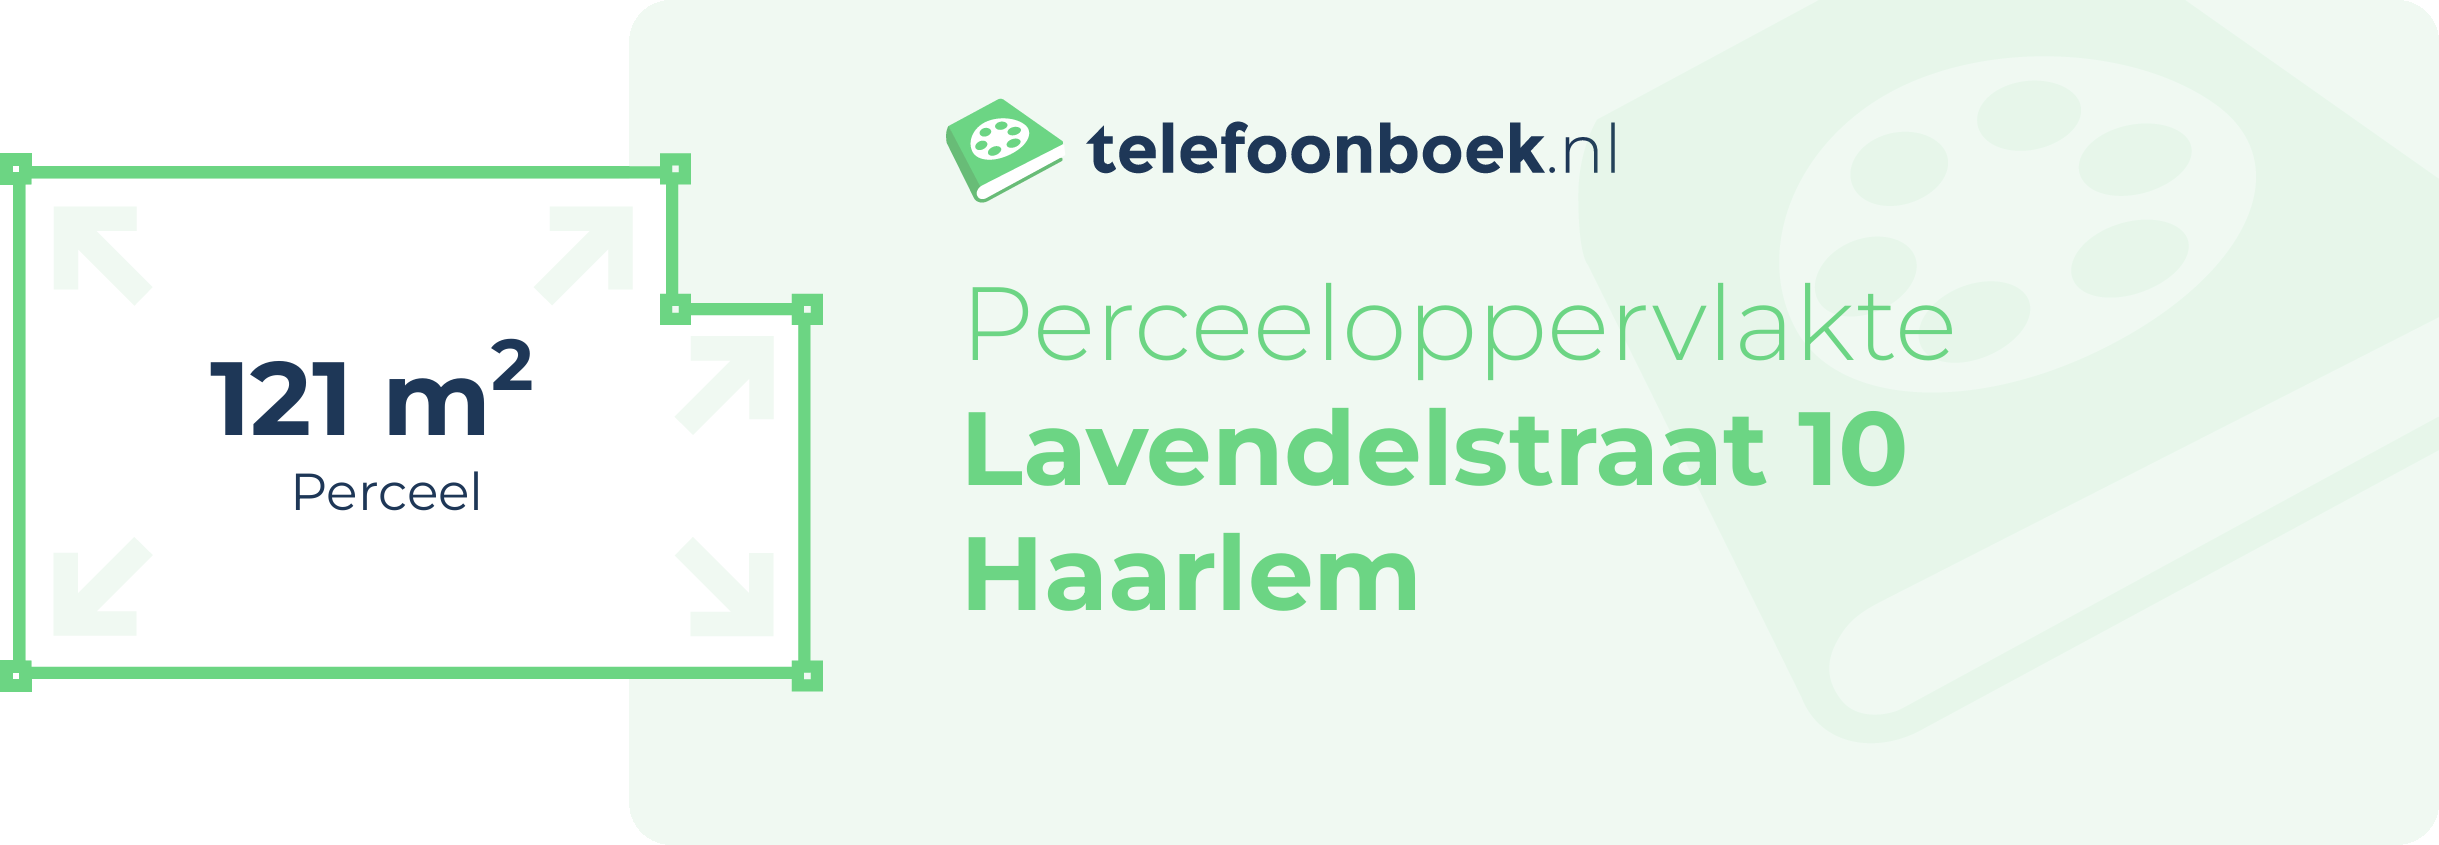 Perceeloppervlakte Lavendelstraat 10 Haarlem